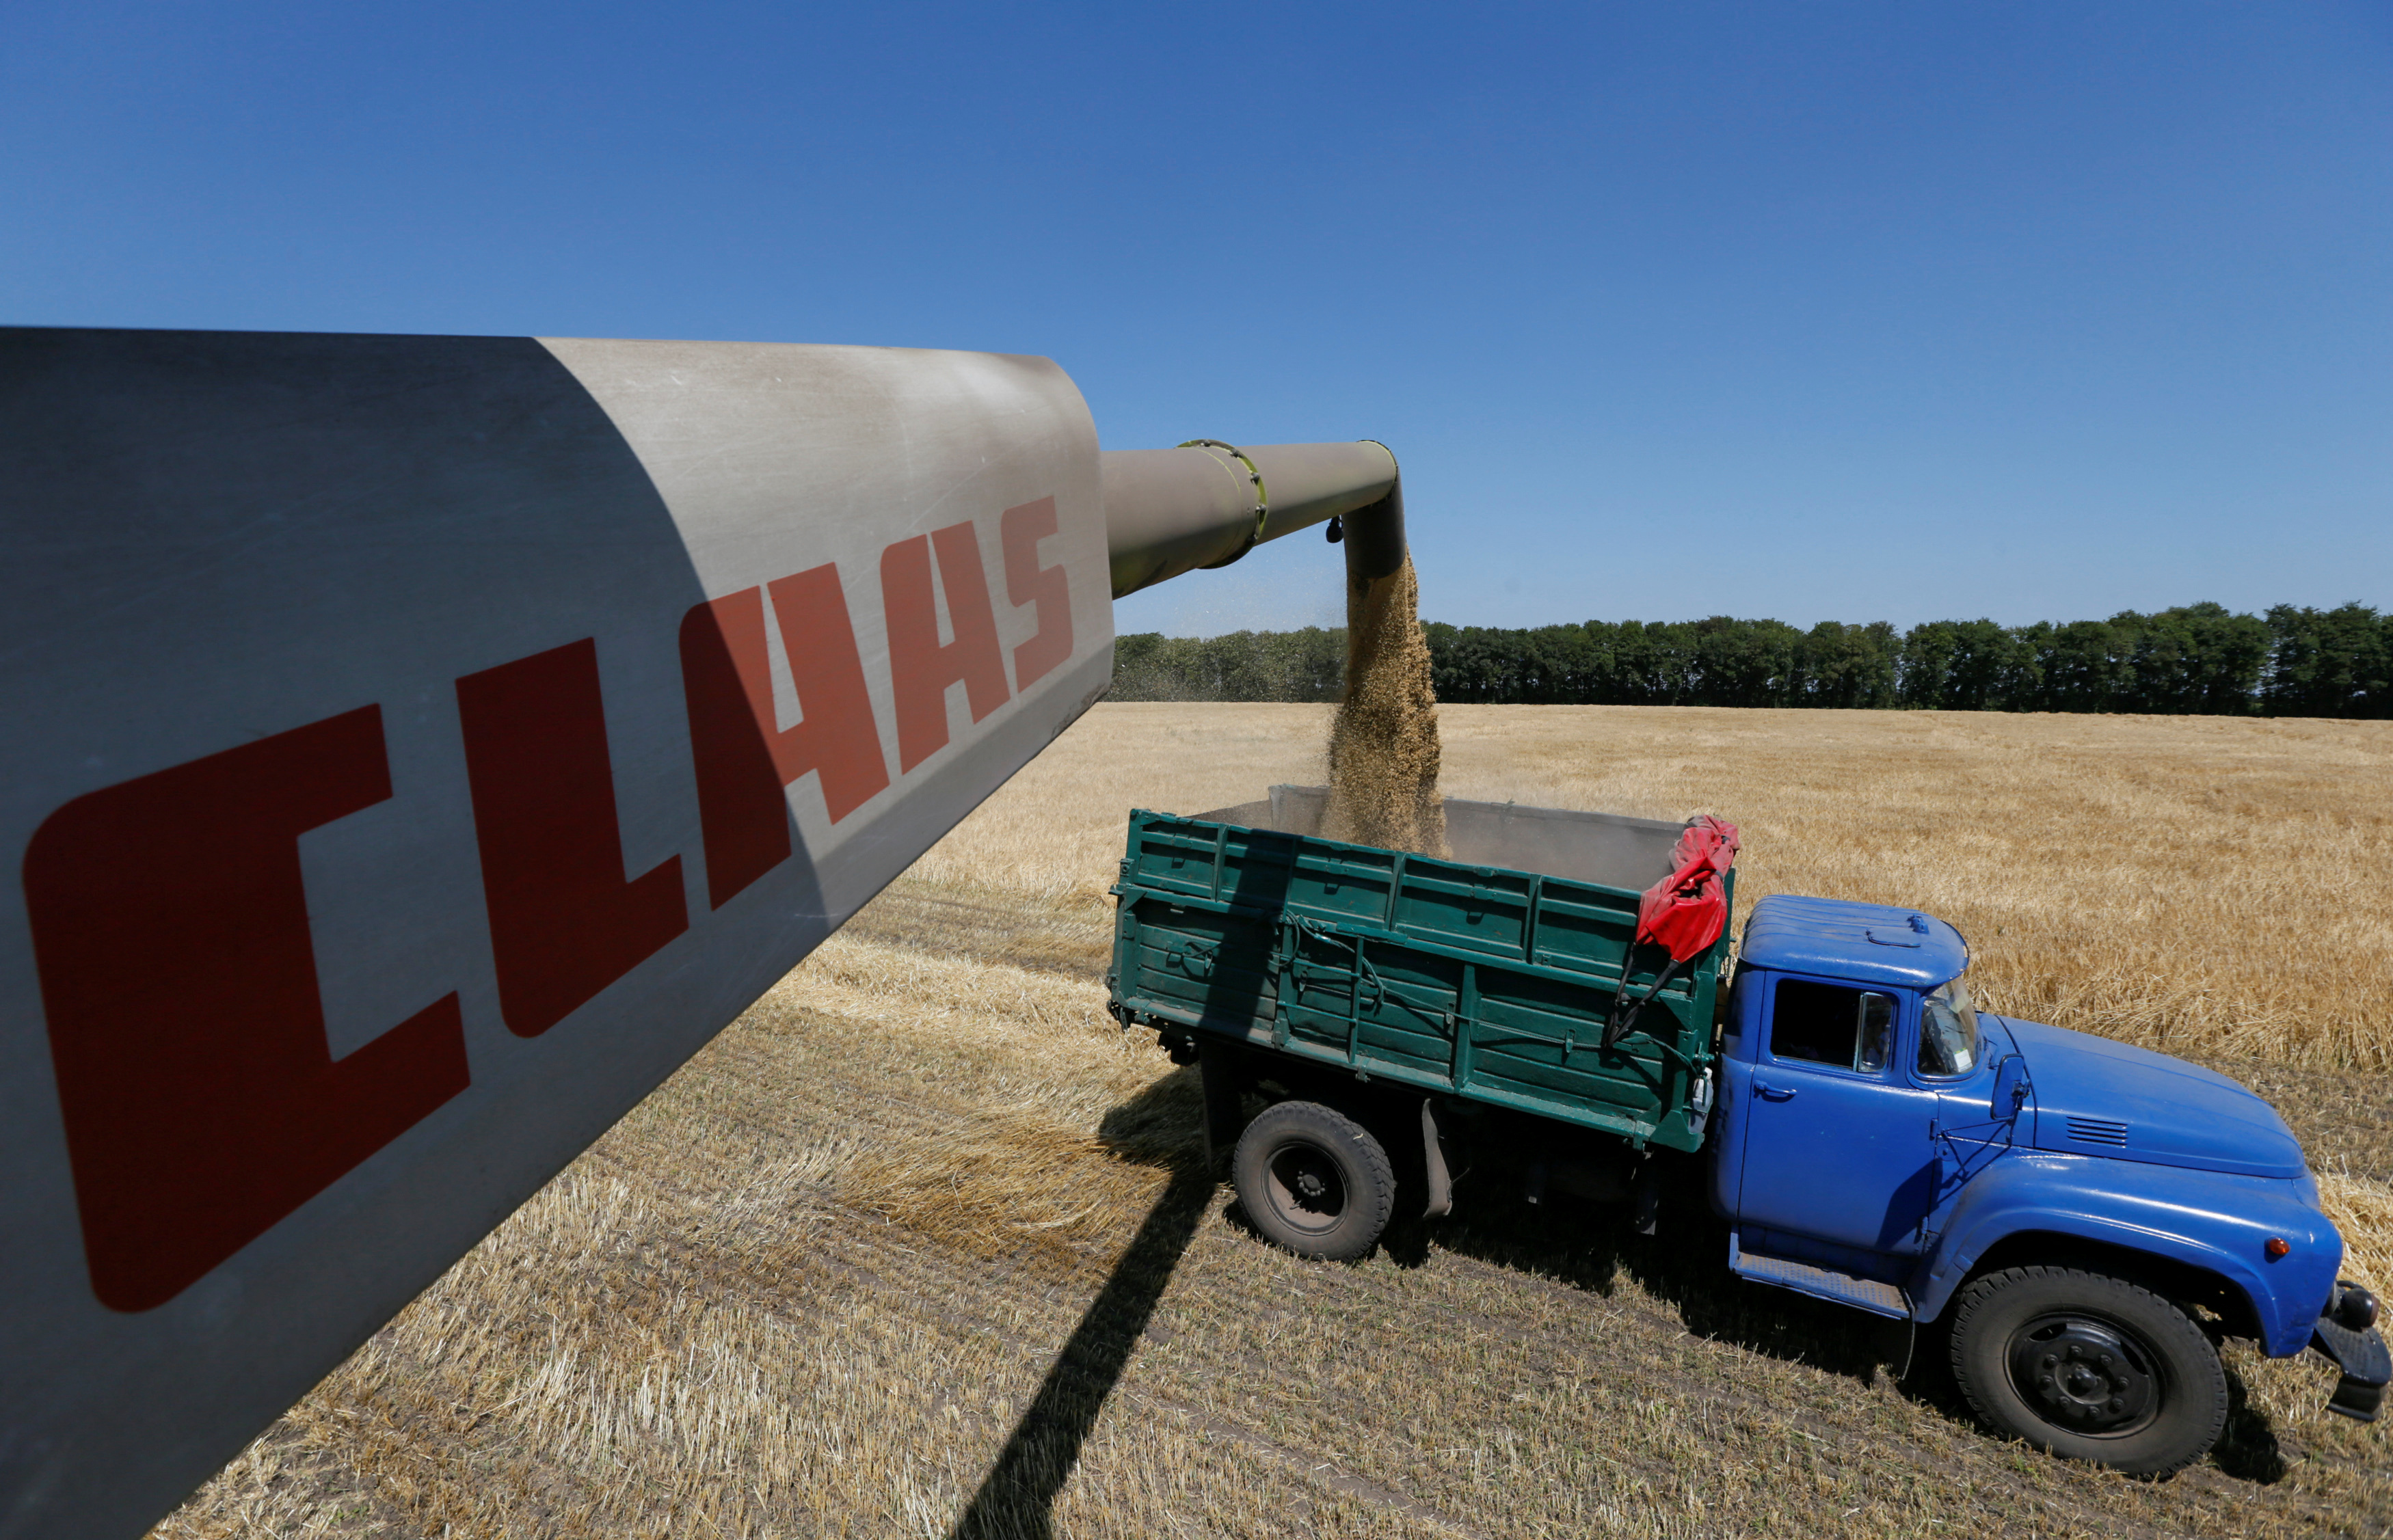 Combine harvester loads truck with barley in field in Kiev region